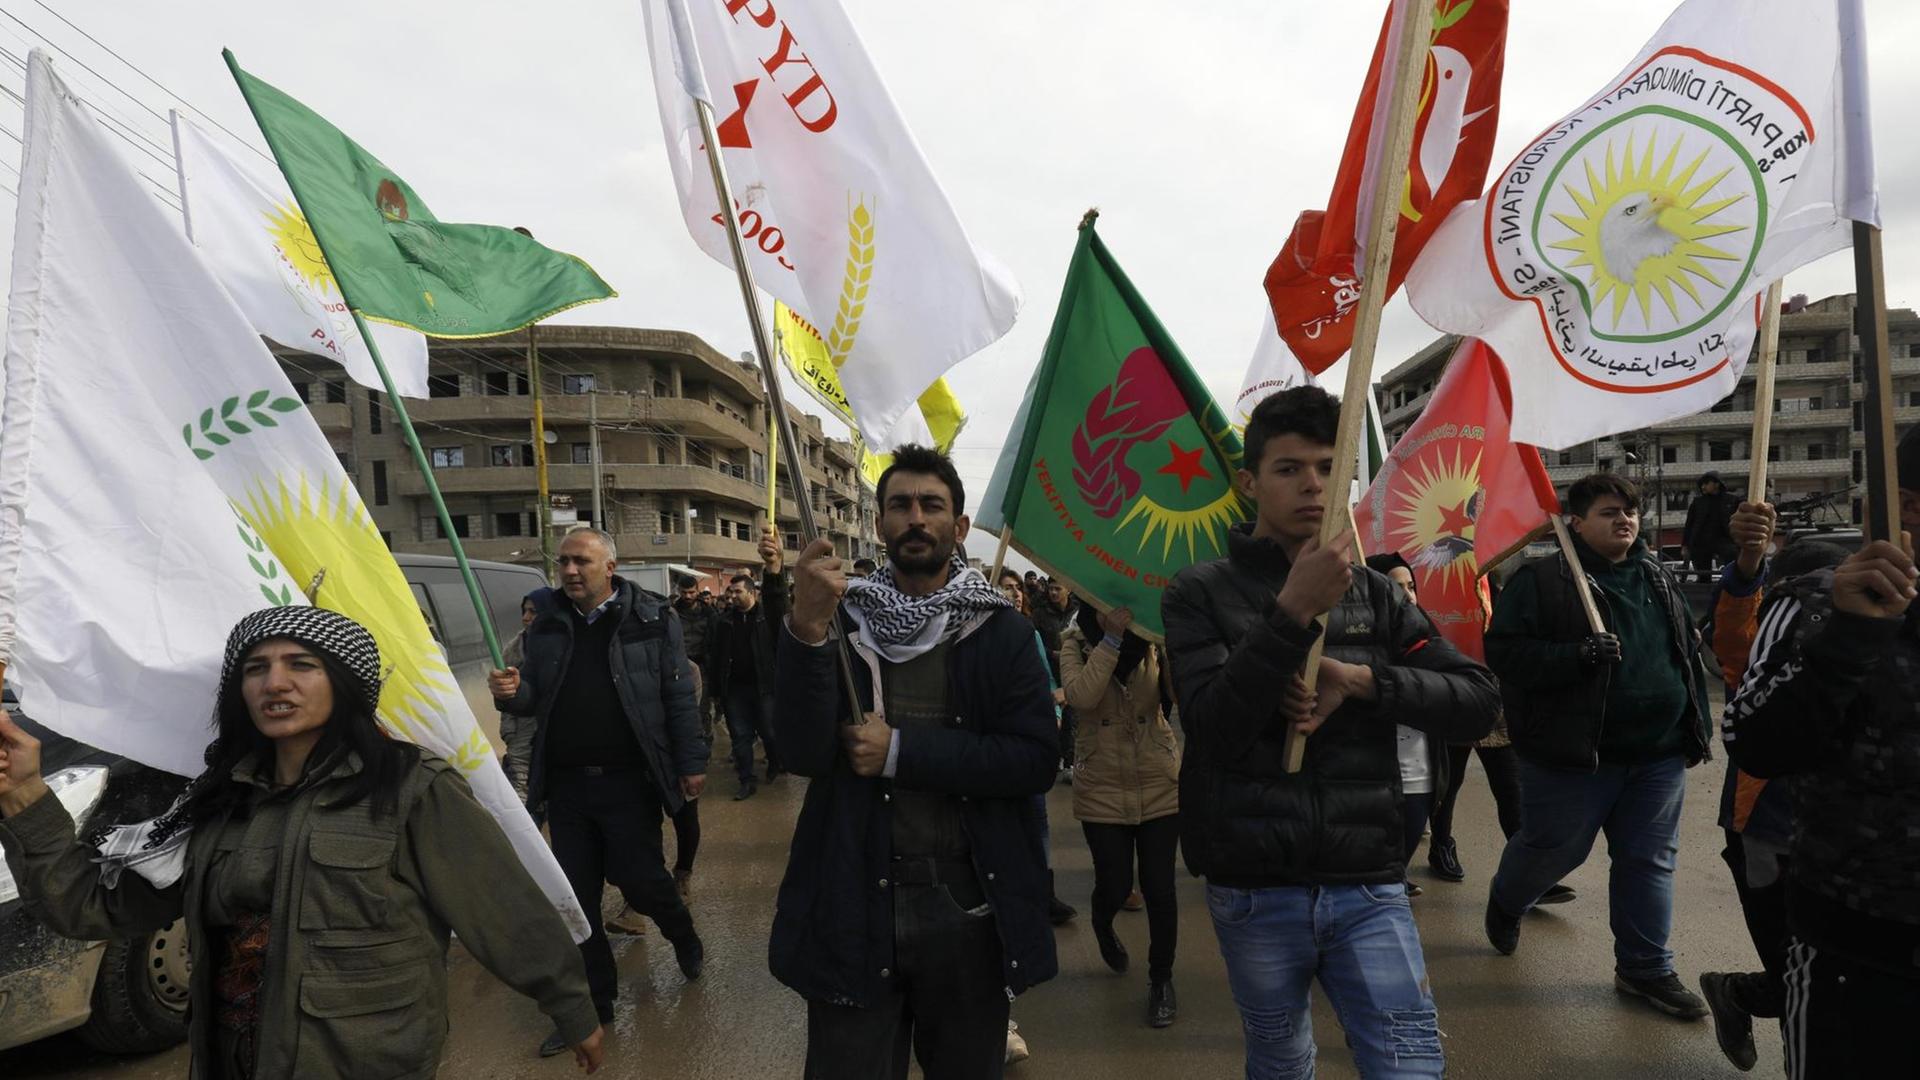 Syrische-kurdische Demonstranten schwenken Fahnen während einer Demonstration im Nordosten Syriens.